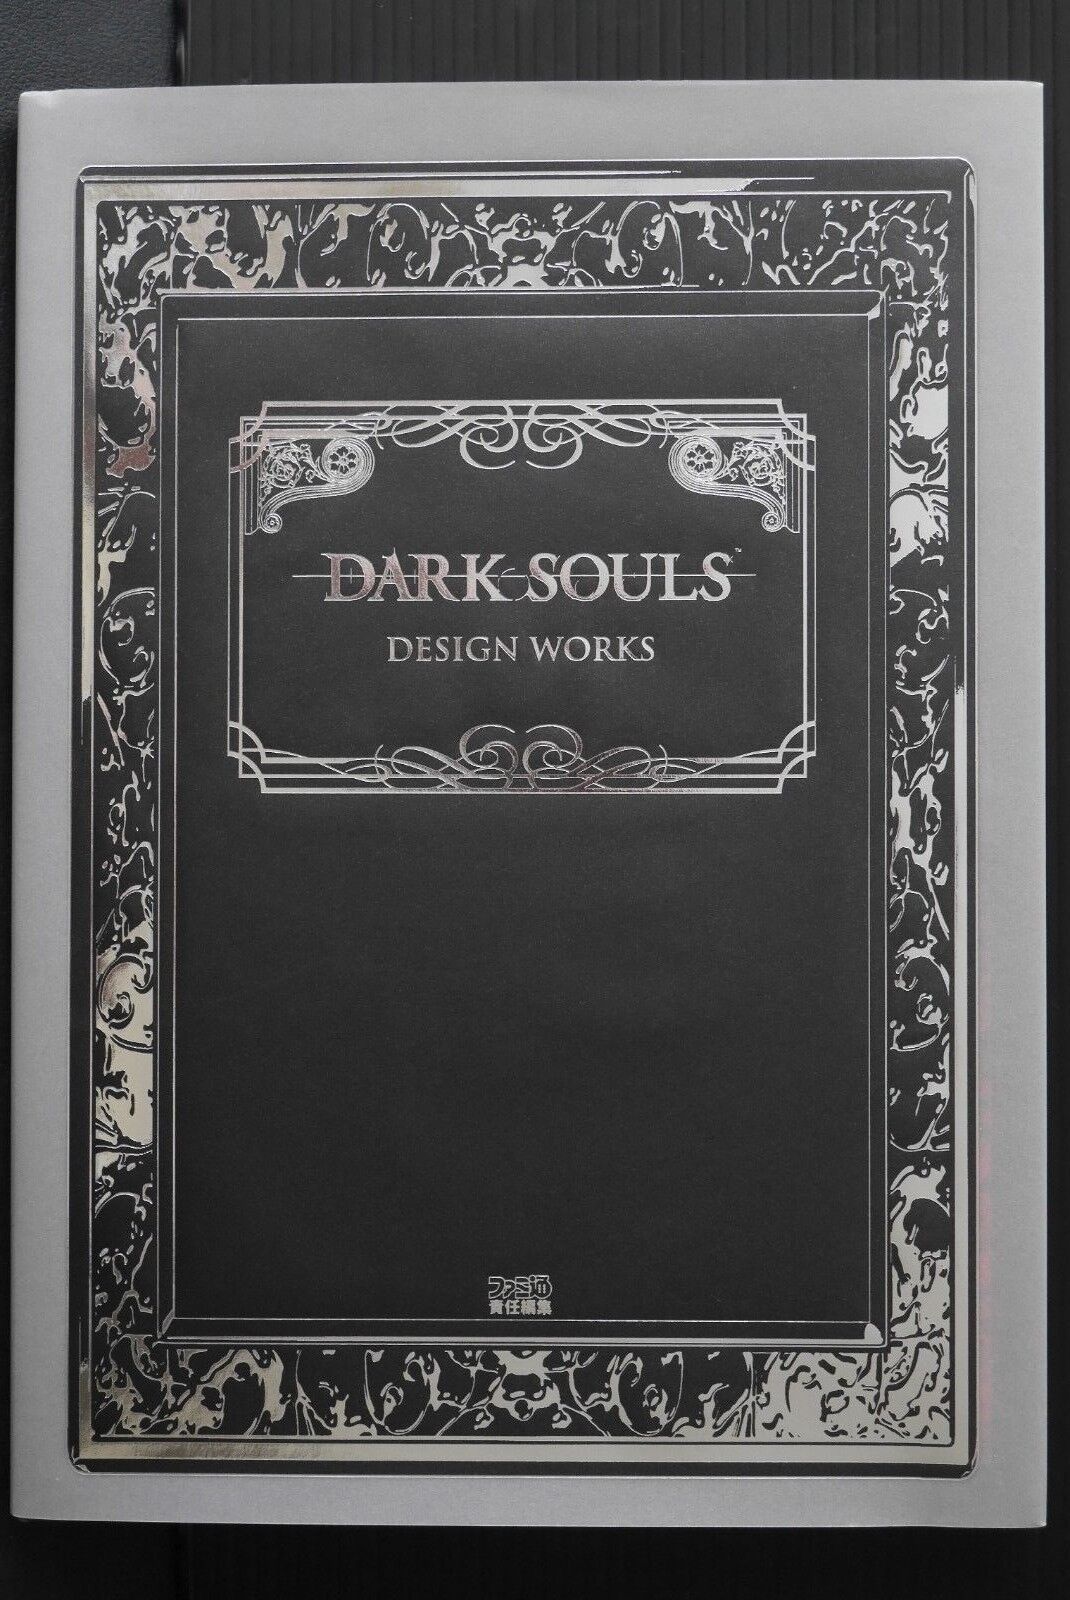 JAPAN Dark Souls Design Works (Dark Souls Art Book)